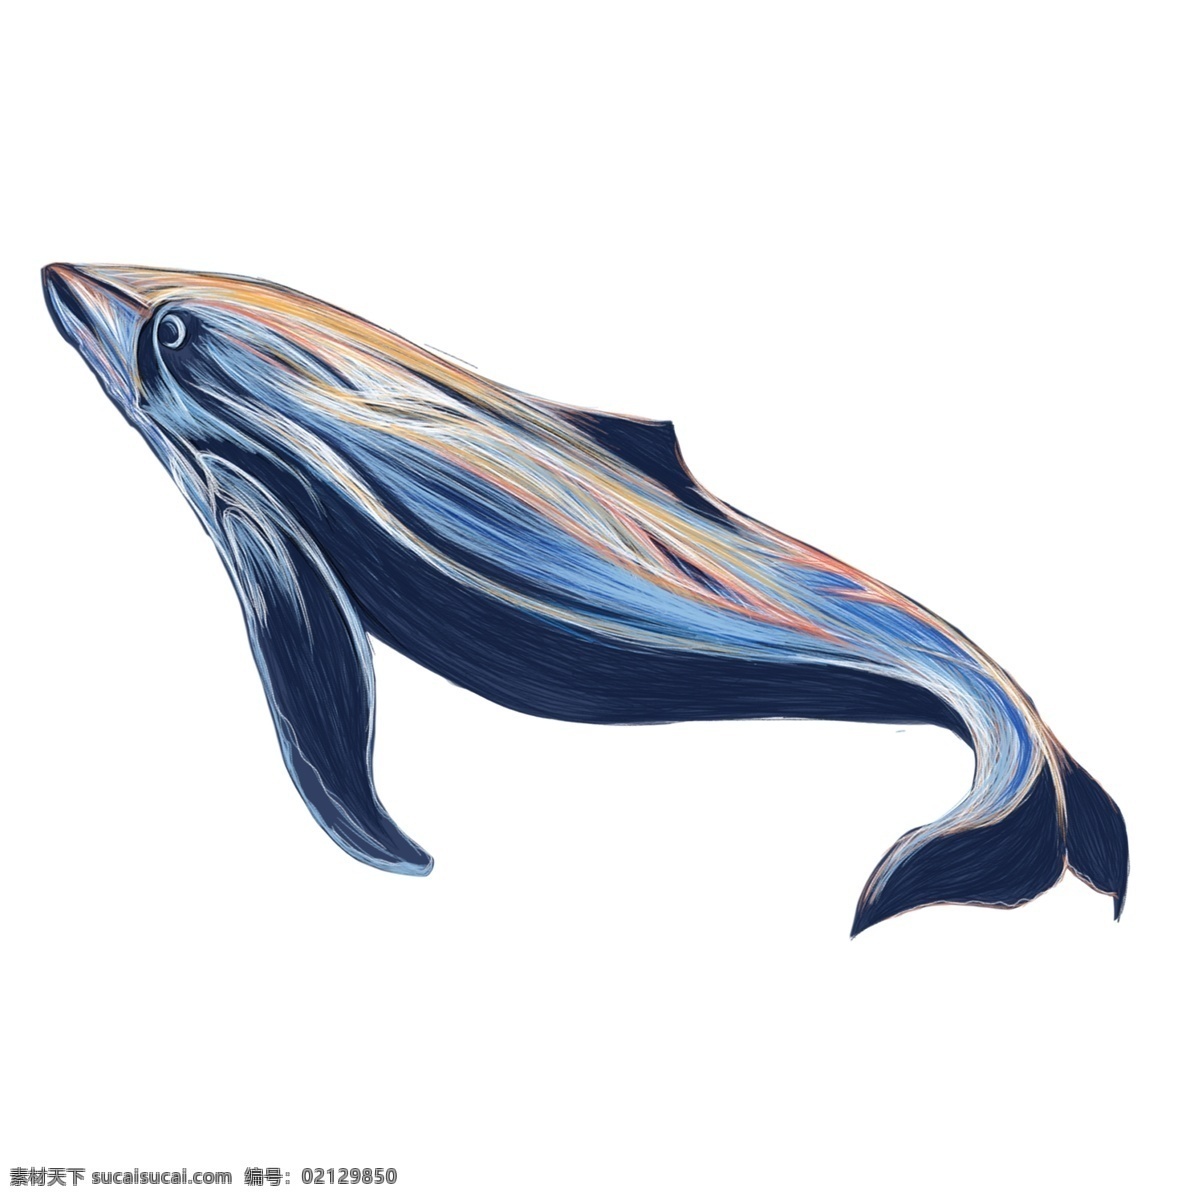 线圈 印象 鲸鱼 元素 手绘 插画 动物 鱼 线圈印象